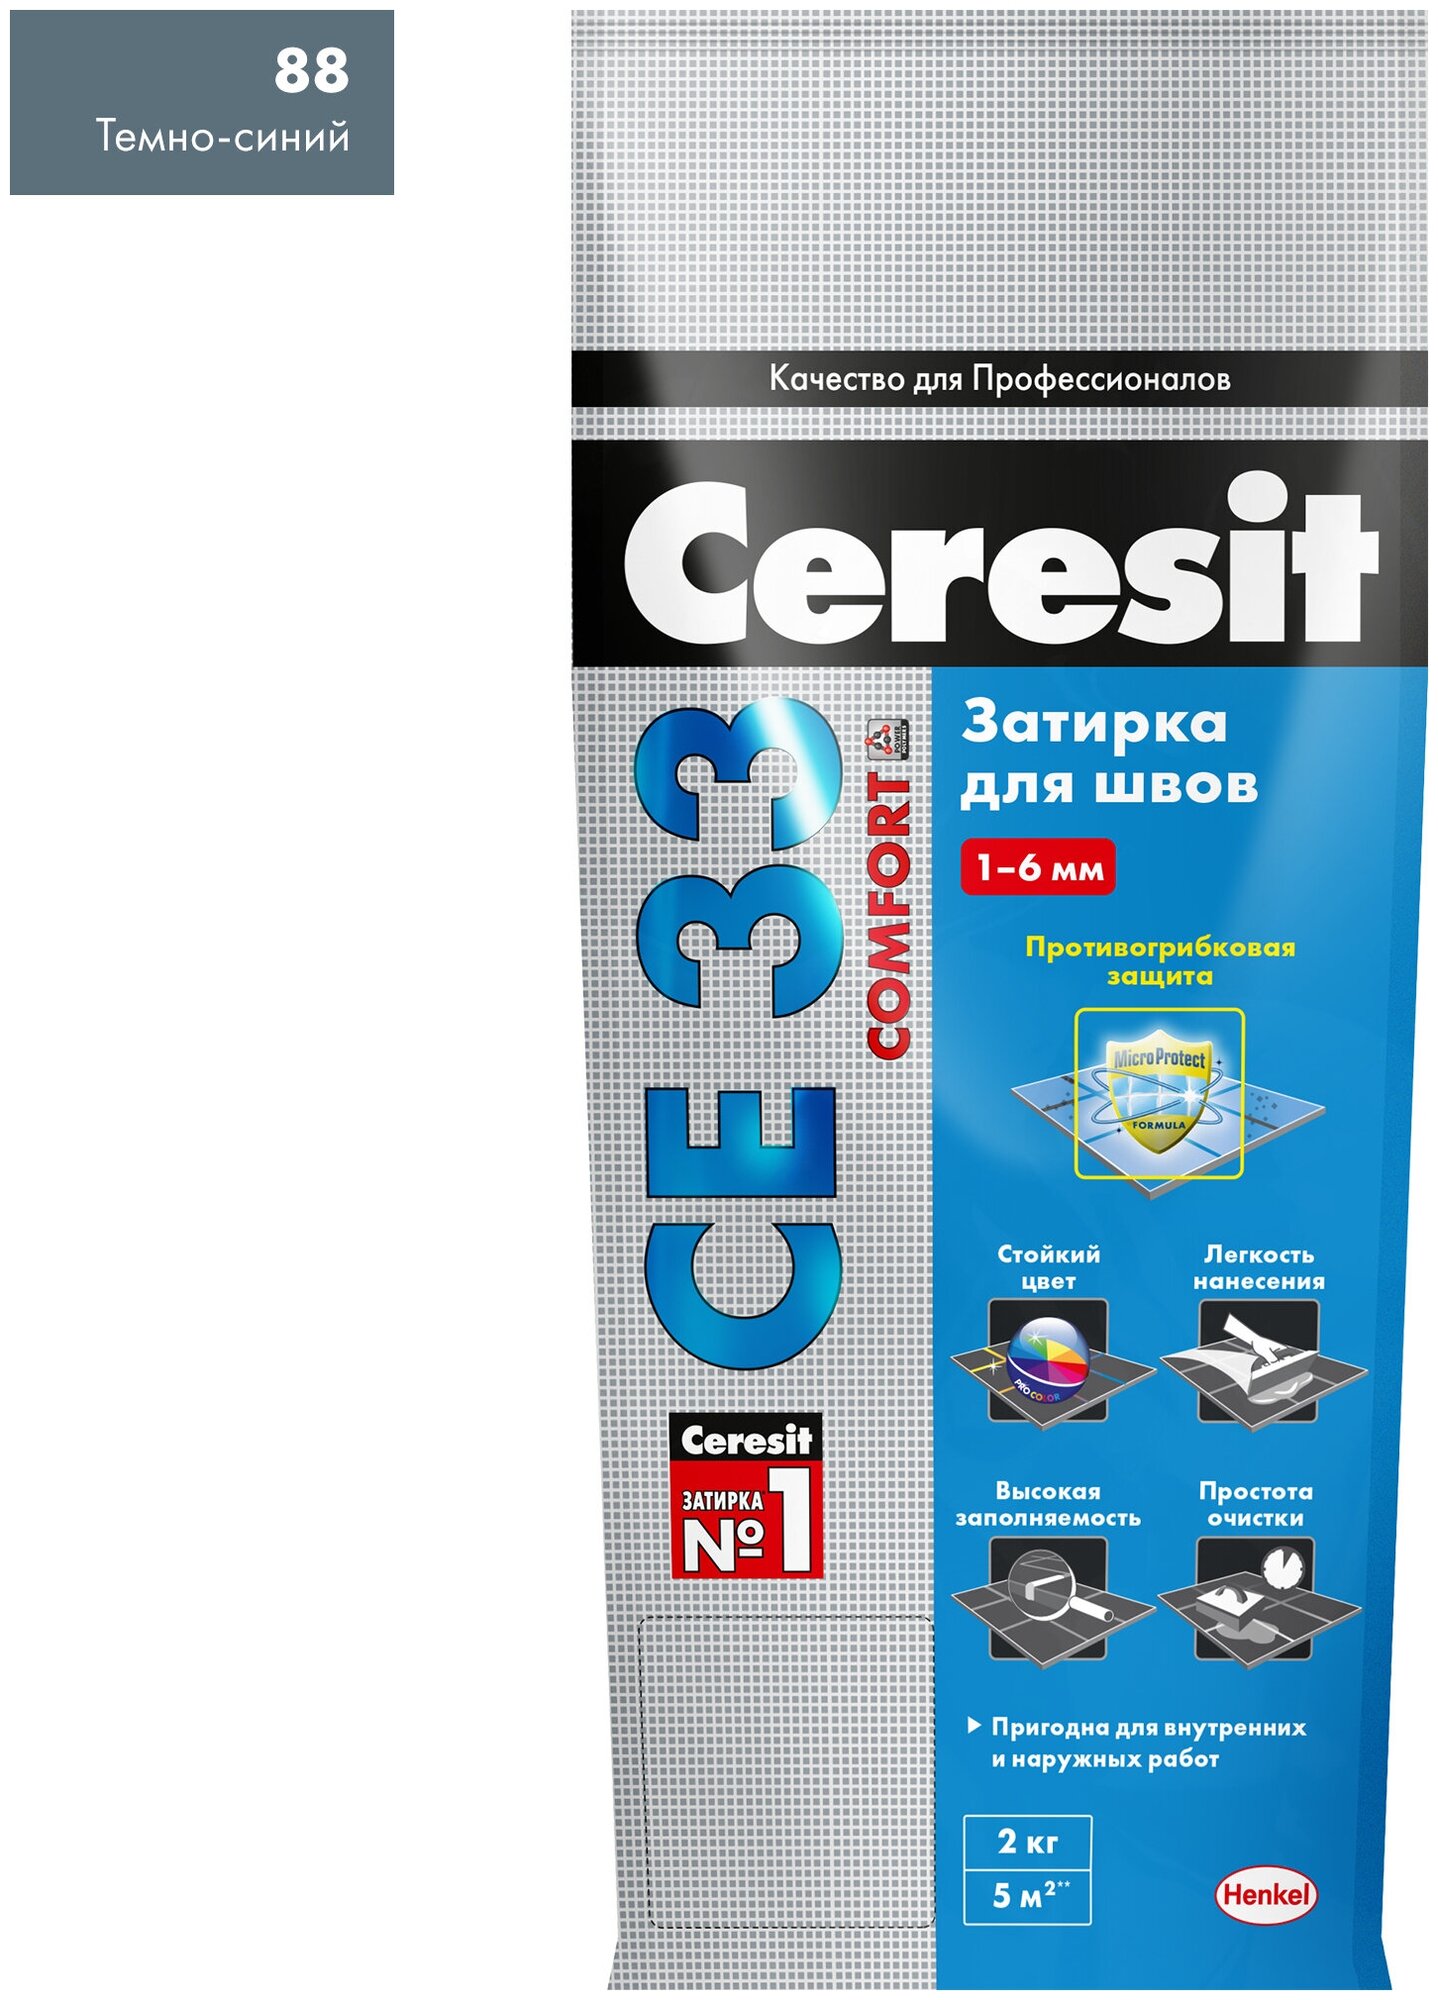 Затирка Ceresit CE 33 Comfort